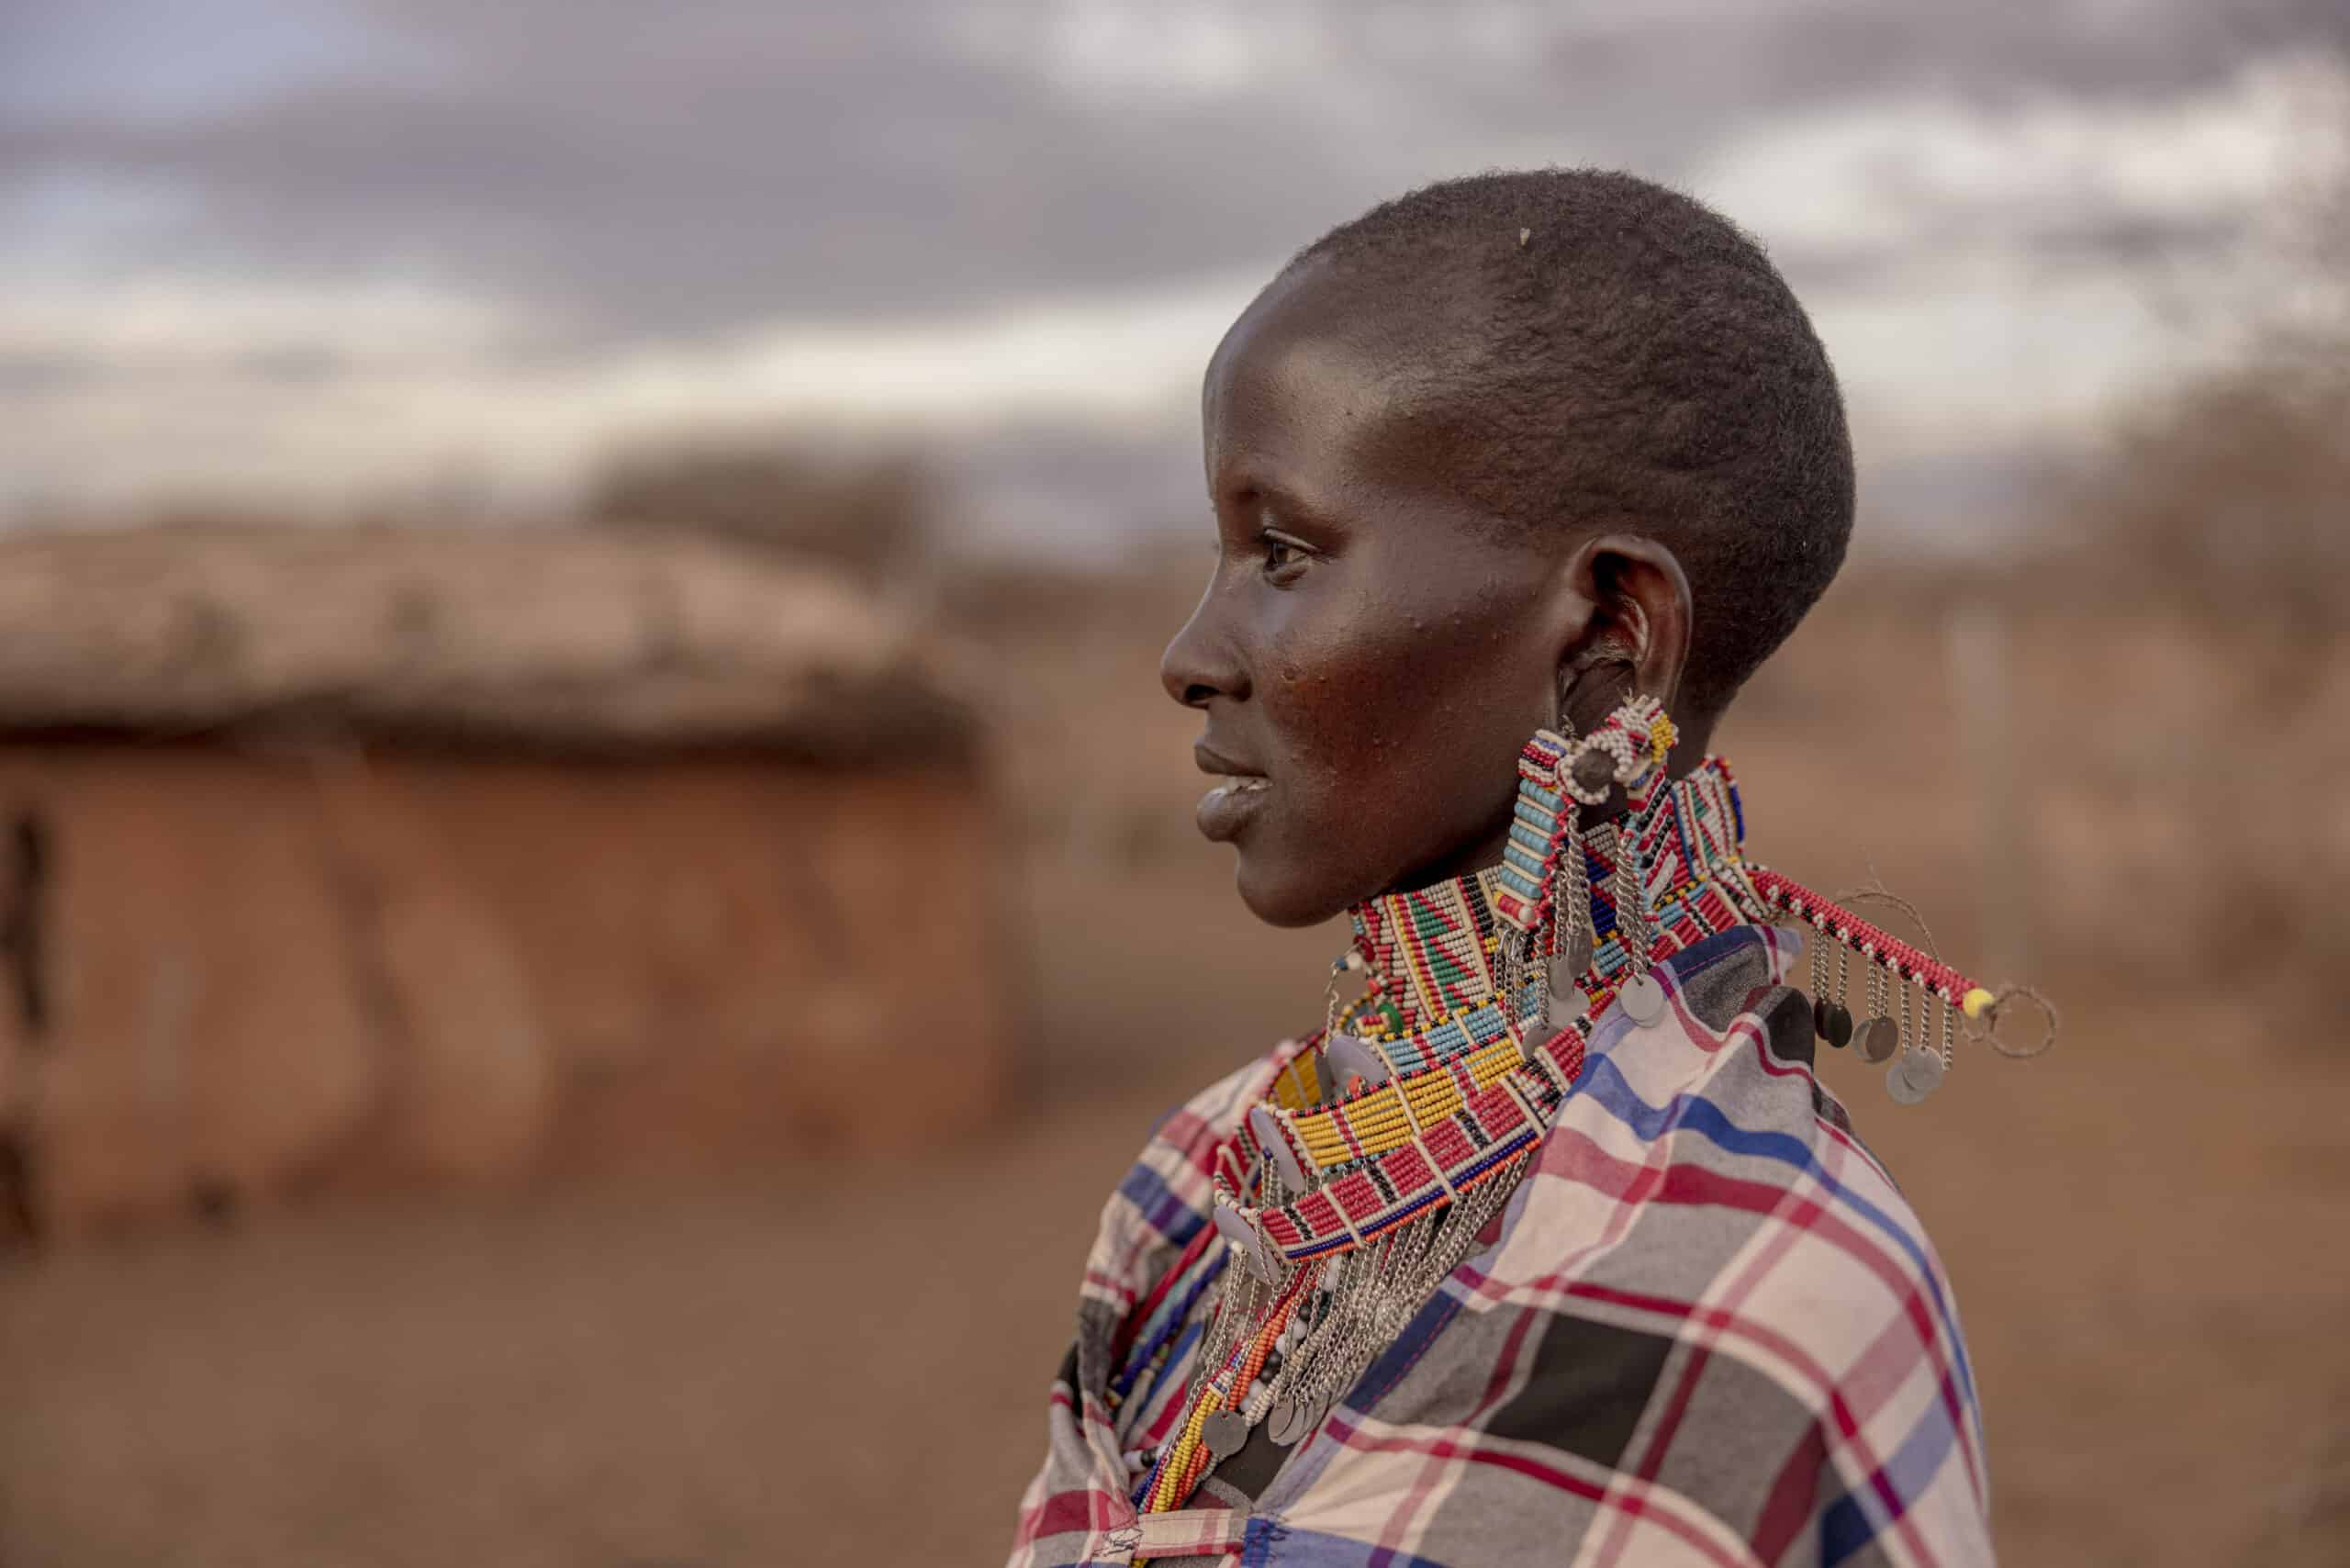 Das Profil einer jungen Frau vor einer ländlichen Kulisse. Sie trägt traditionellen Perlenschmuck und einen bunten Schal. Ihr Gesichtsausdruck ist nachdenklich. Im Hintergrund sind Hütten mit Strohdächern zu sehen. © Fotografie Tomas Rodriguez